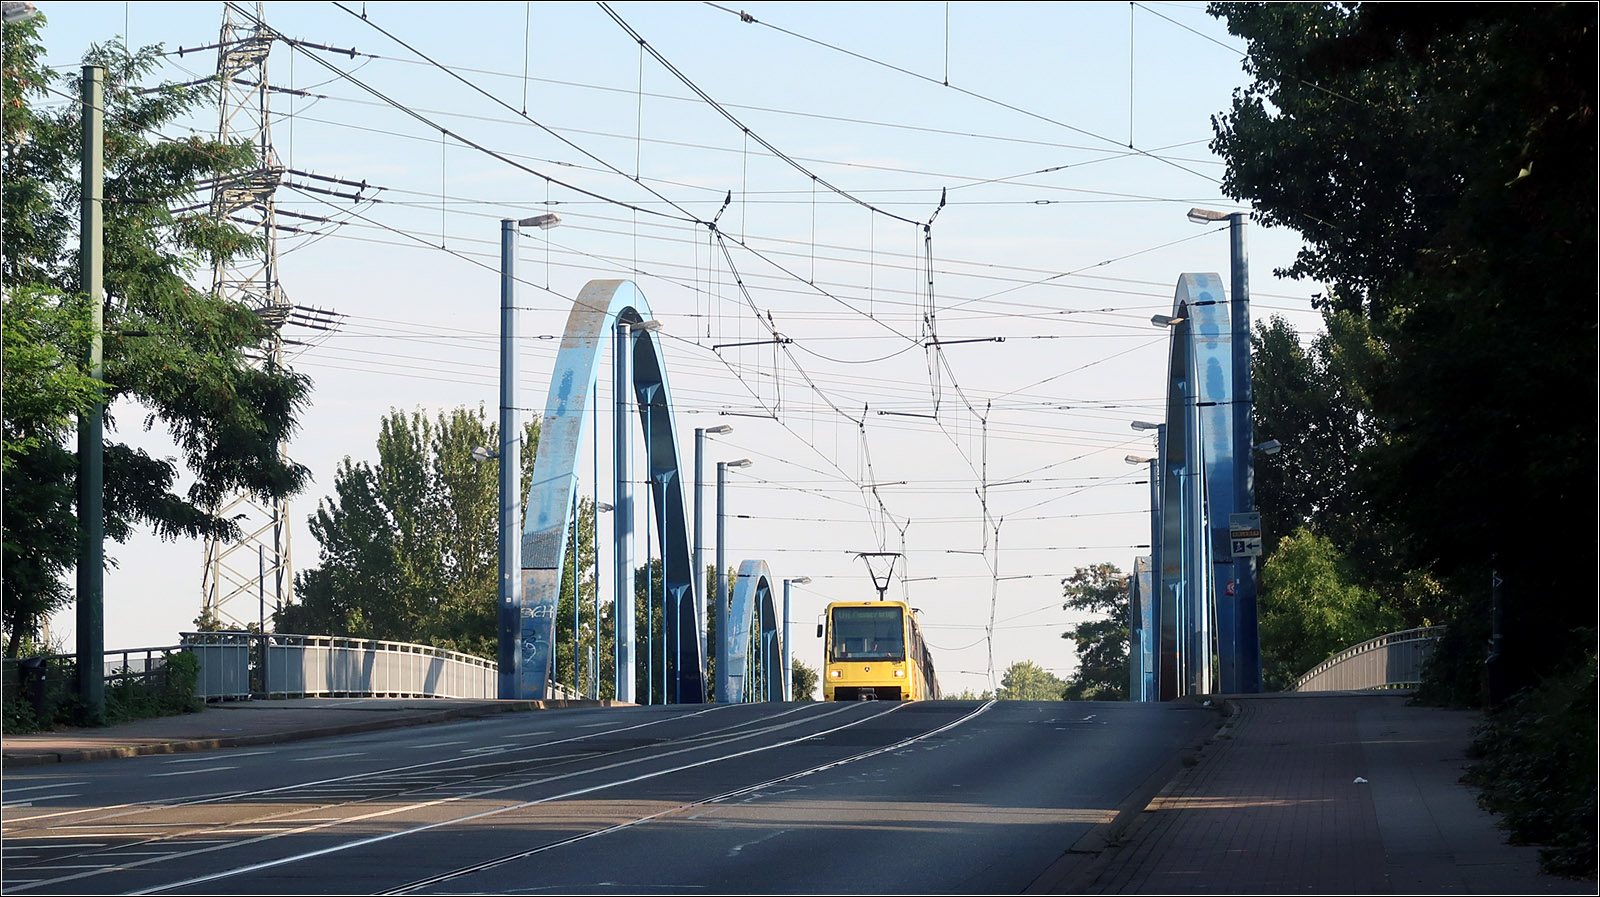 Die Nordstrecke der Essener Stadtbahn - 

Der Rhein-Herne-Kanal wird von der Stadtbahnlinie U11 auf einer Bogenbrücke überquert. Die Gleise liegen im Straßenraum.
Man beachte auch die an seitlichen Masten aufgehängte Hochkettenfahrleitung. Zusammen mit den drüber liegenden Hochspannungsleitungen ergibt sich ein faszinierendes Netz aus Leitungen.

22.03.2023 (M)